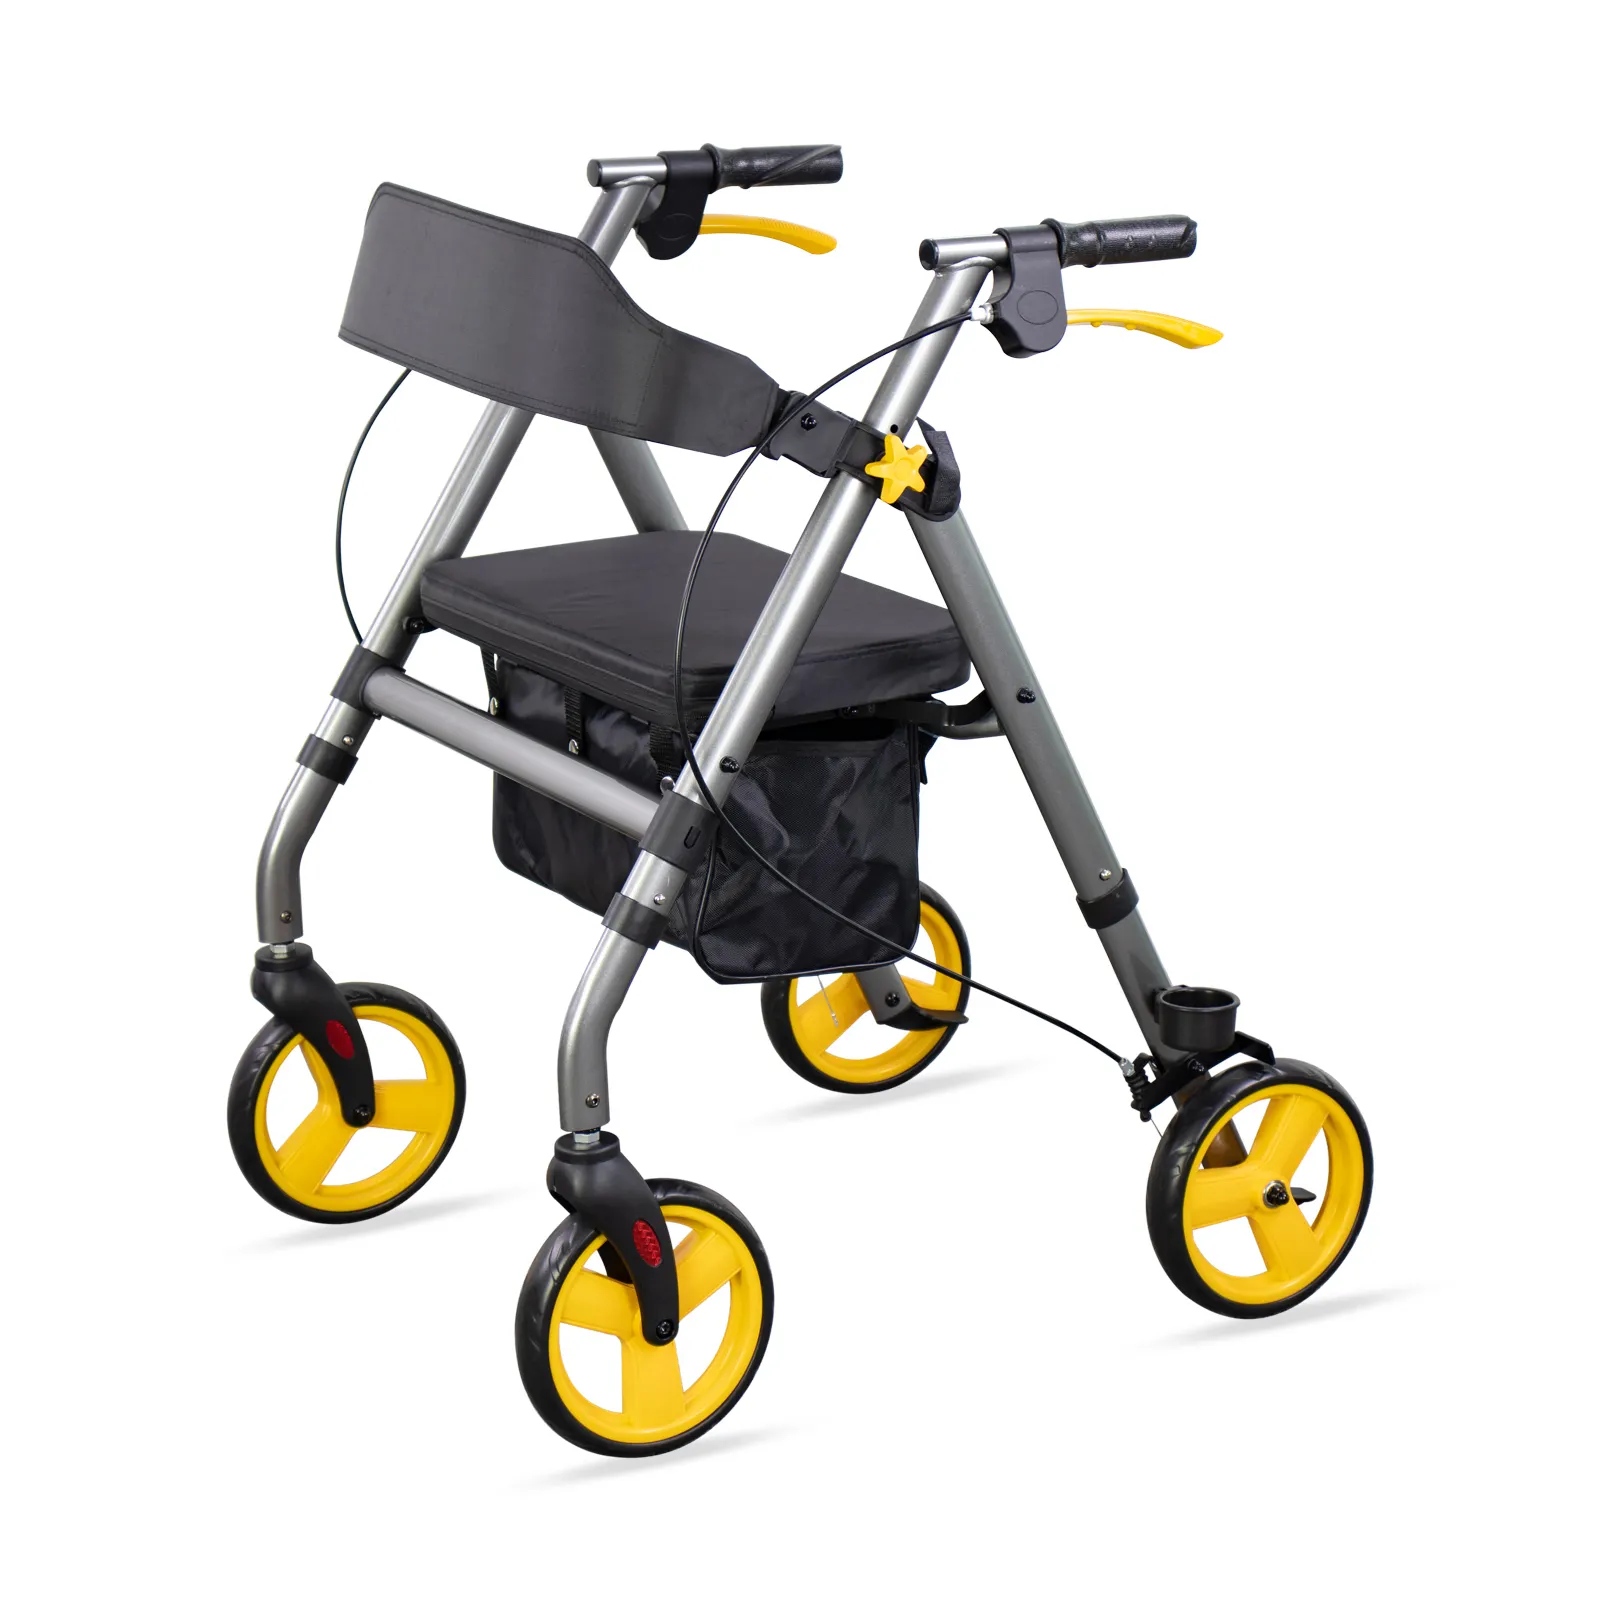 Alat bantu jalan untuk orang tua, Rollator serat karbon ringan lipat baja/Aloi aluminium portabel